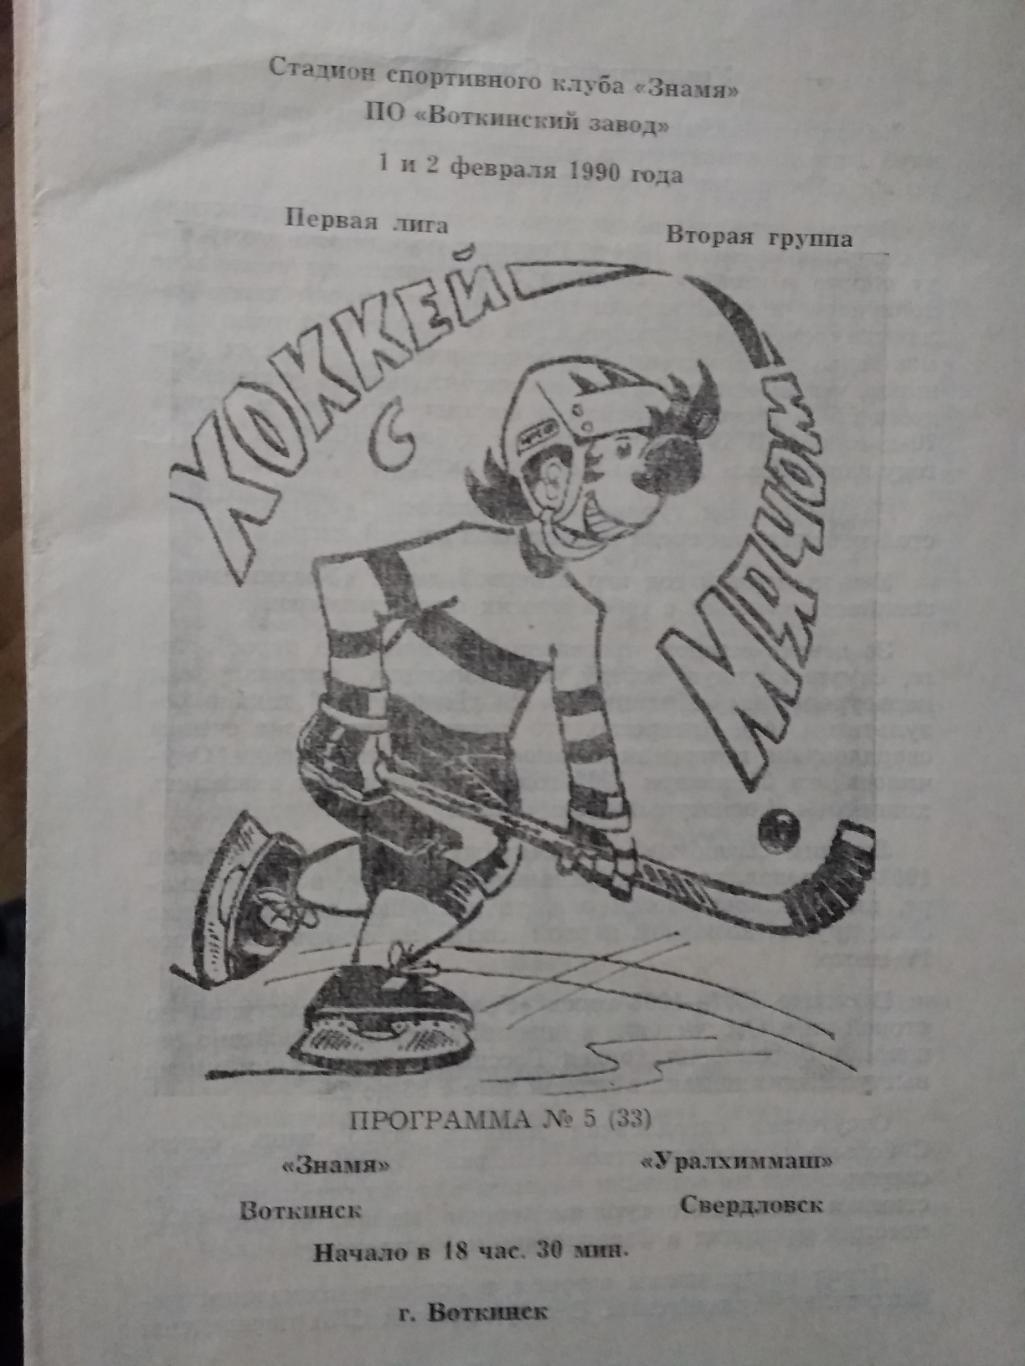 Знамя (Воткинск) - Уралхиммаш (Свердловск). 1-2 февраля 1990.